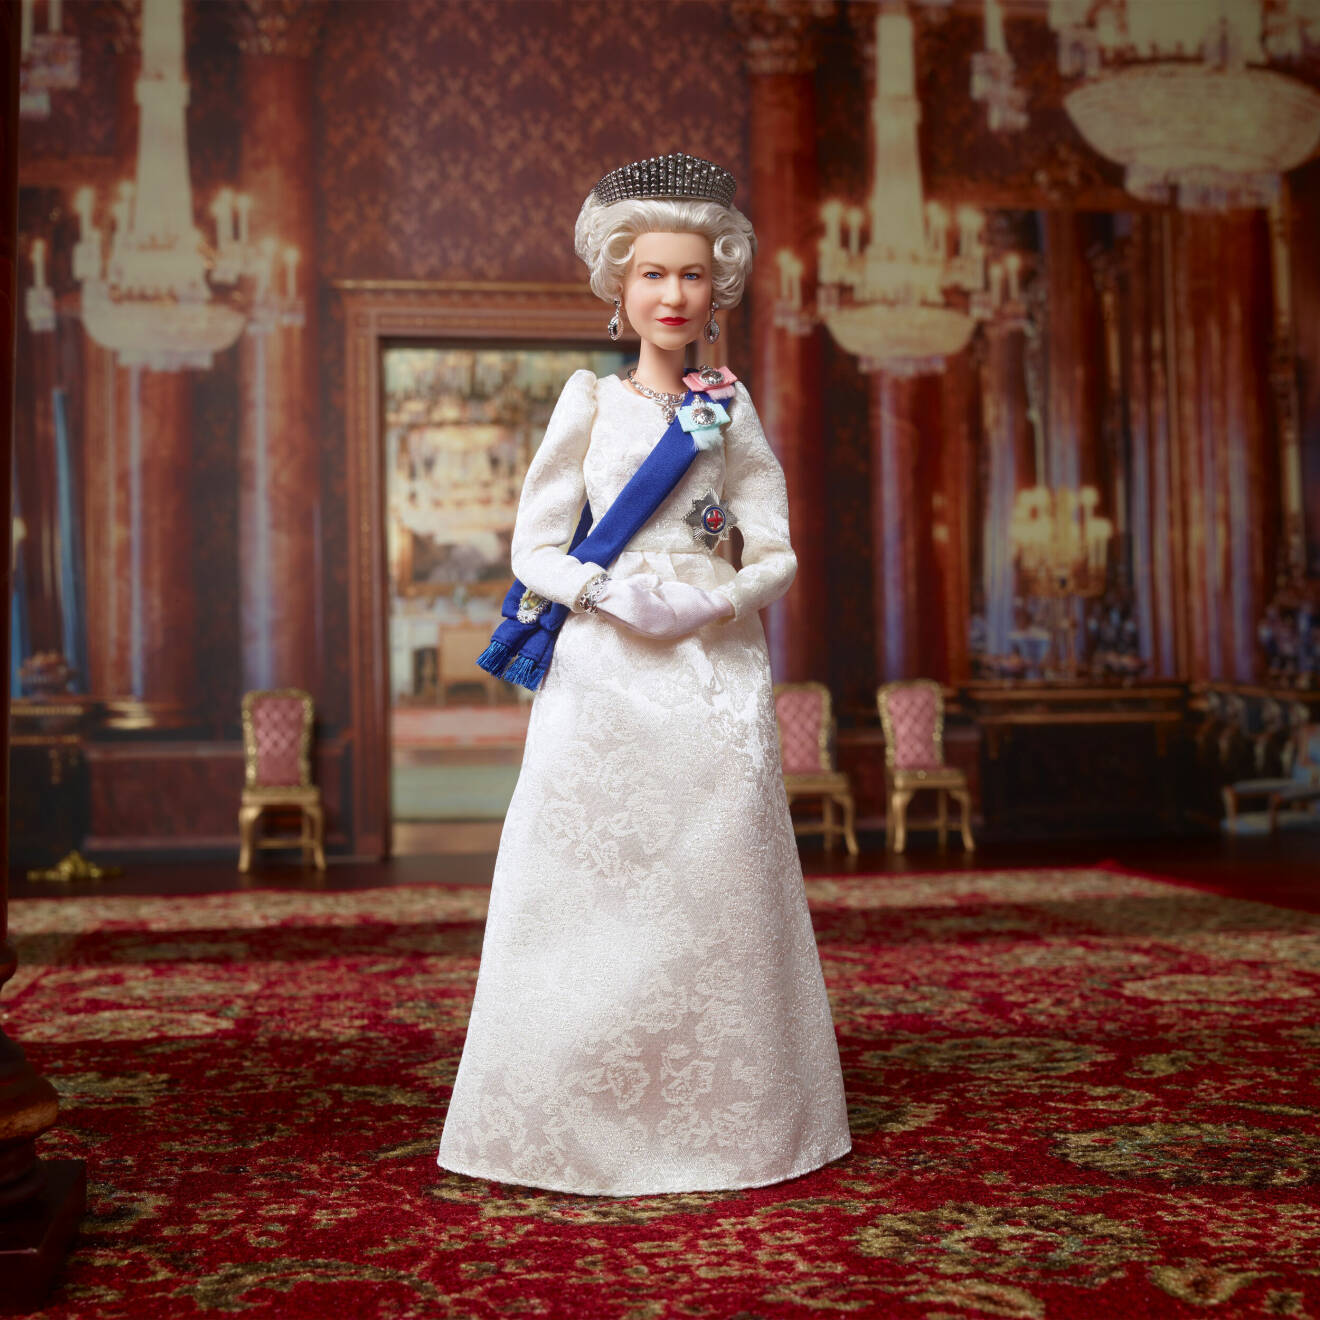 Drottning Elizabeth som barbiedocka